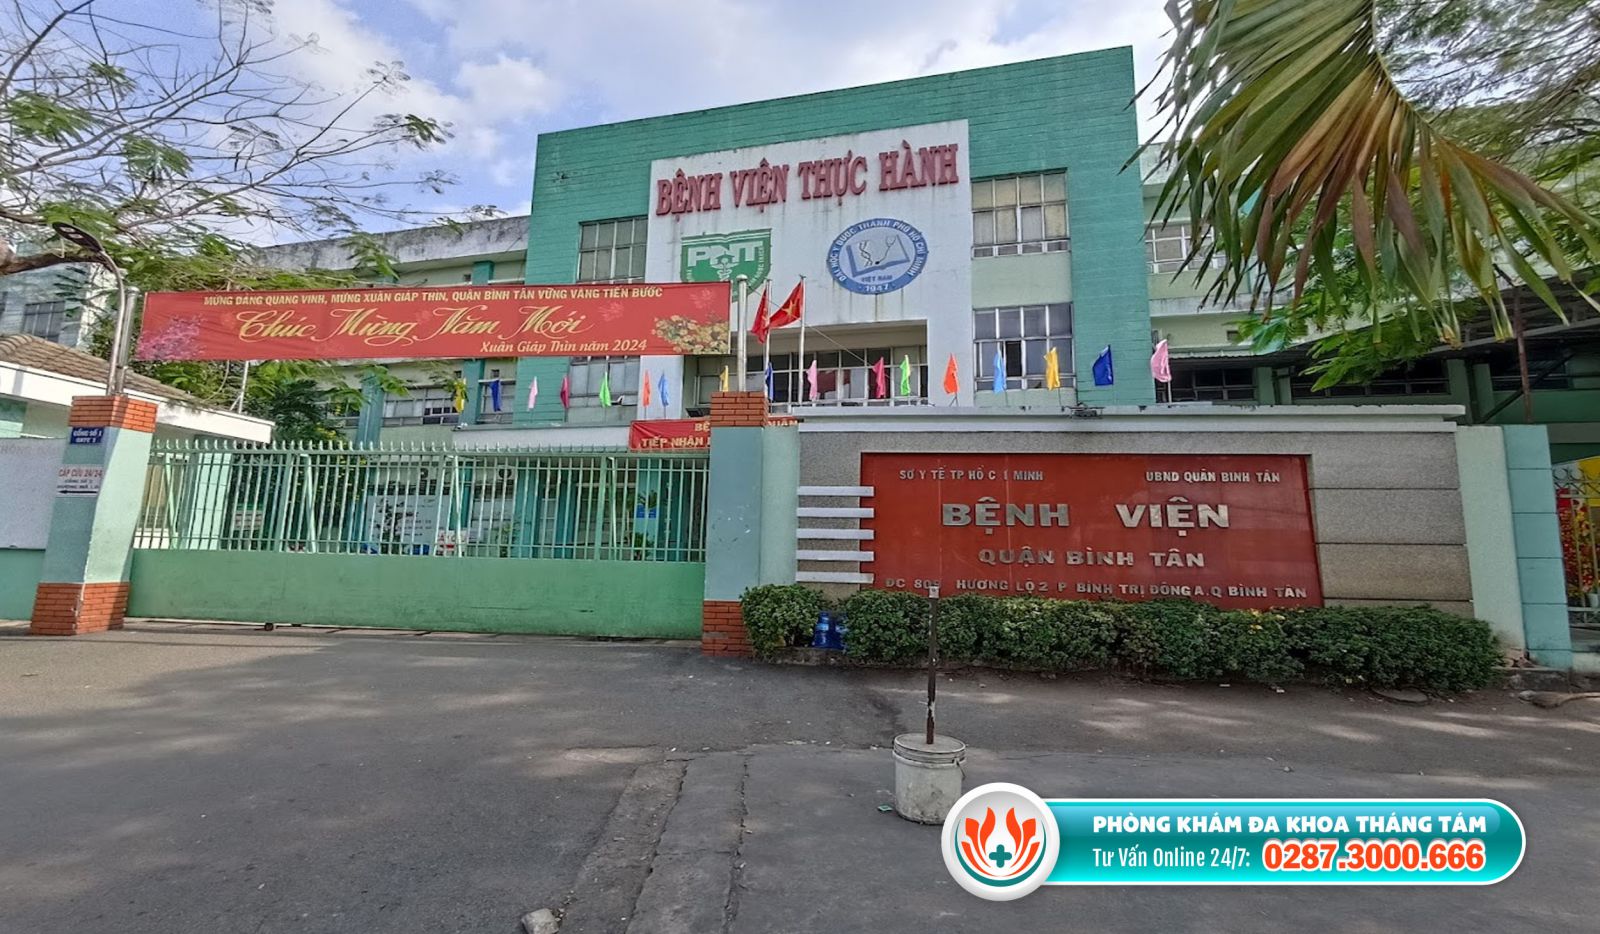 Bệnh viện Quận Bình Tân là nơi khám nam khoa uy tín